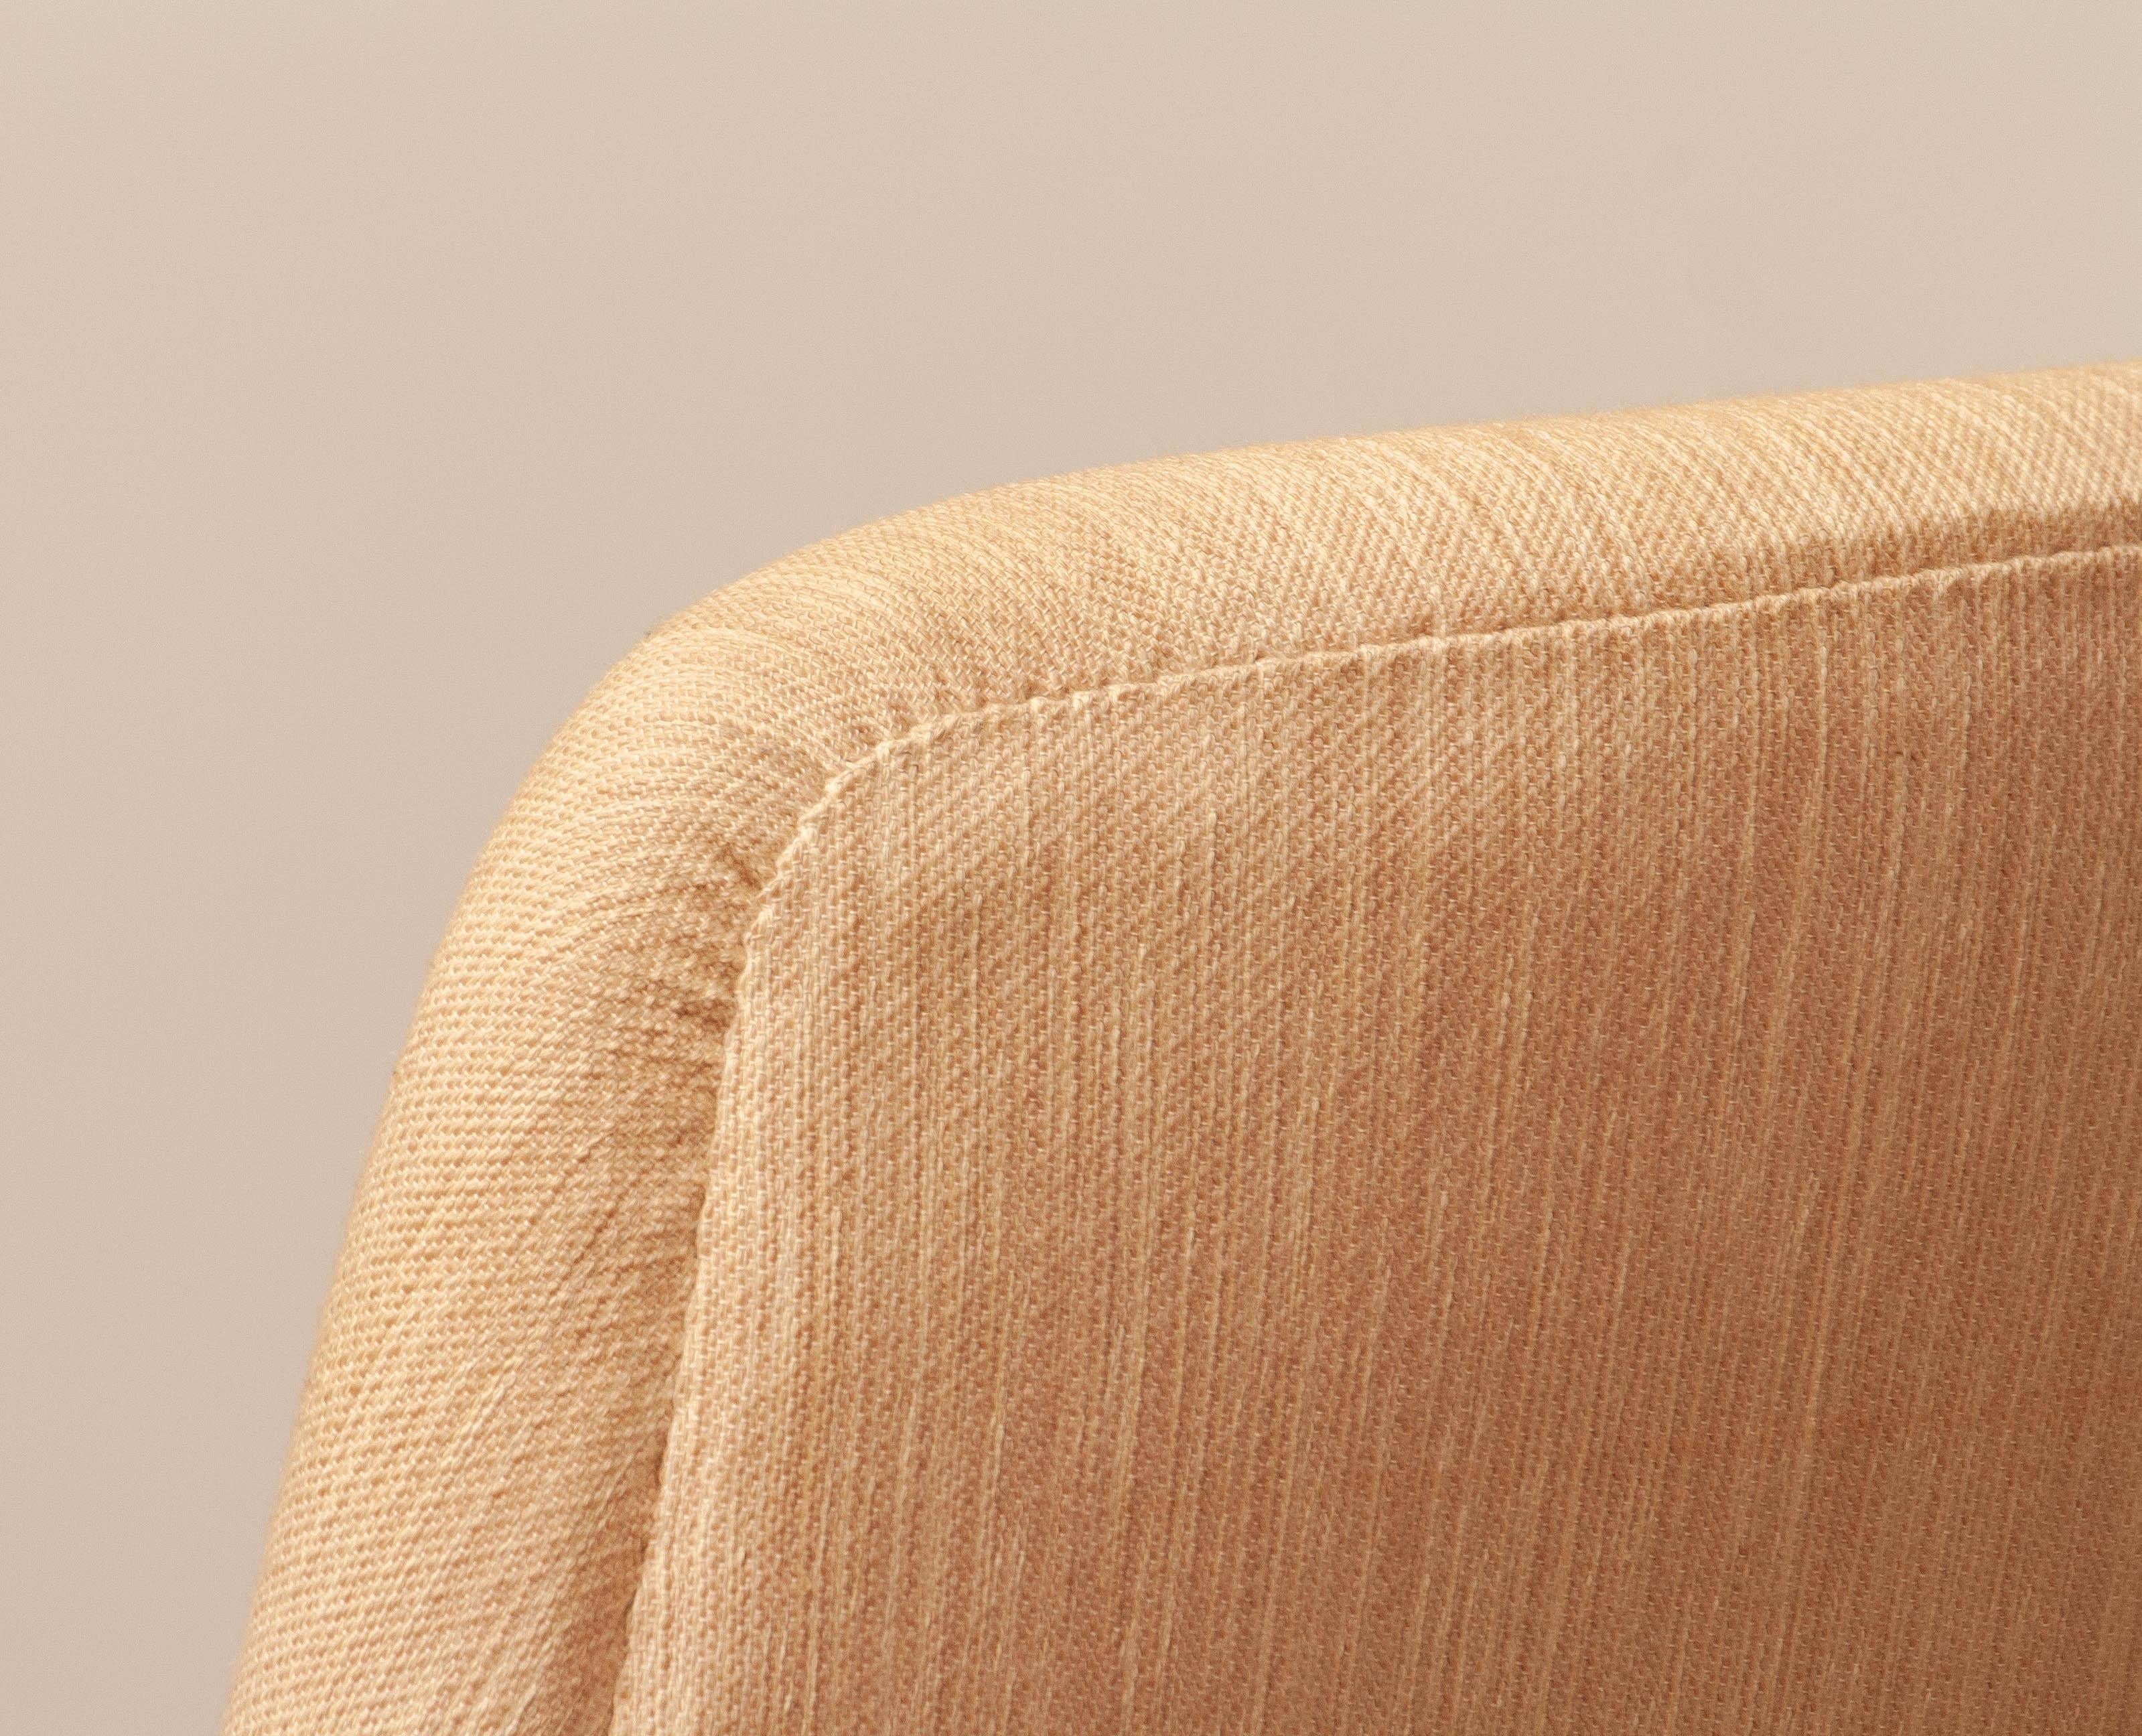 Rare et magnifique chaise longue scandinave à dossier haut, avec le tissu de laine naturel d'origine et les pieds en chêne des années 1960, conçue par Leif Hansen pour Mobelfabriken Kronen au Danemark.
Cette chaise longue est en très bon état et